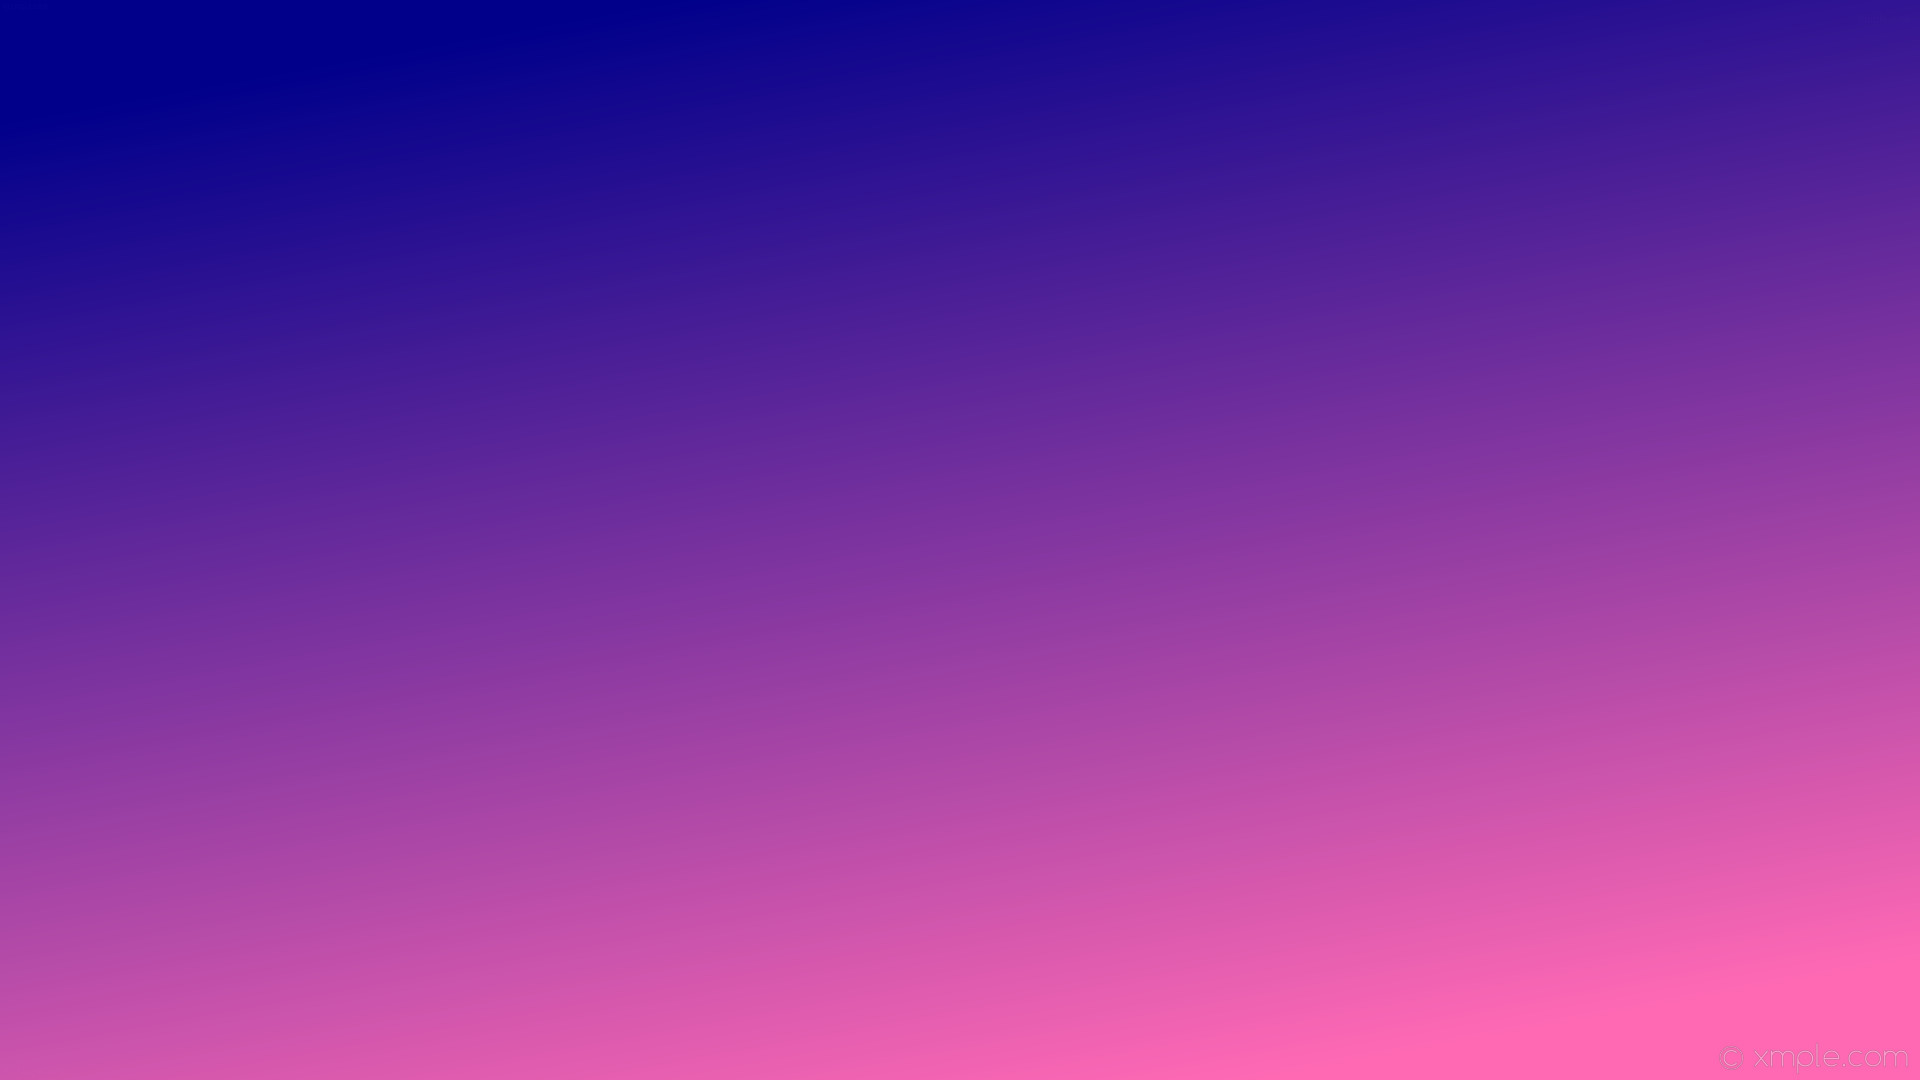 1920x1080 wallpaper blue pink gradient linear hot pink dark blue #ff69b4 #00008b 300Â°